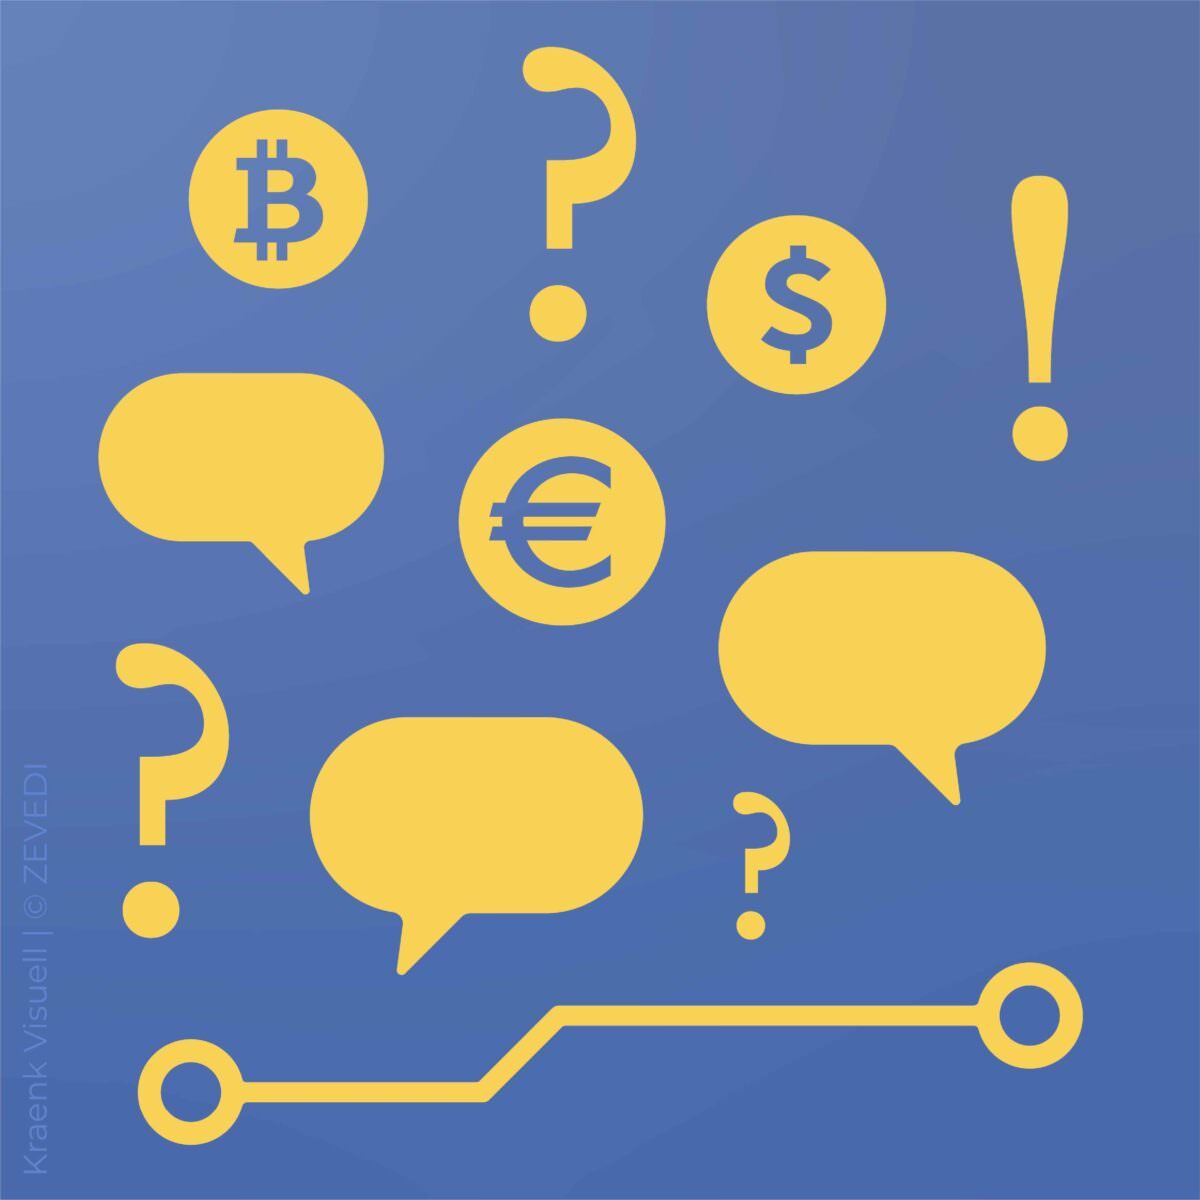 Stilisierte gelbe Sprechblasen, Fragezeichen und Bitcoin-Symbole auf blauem Grund.